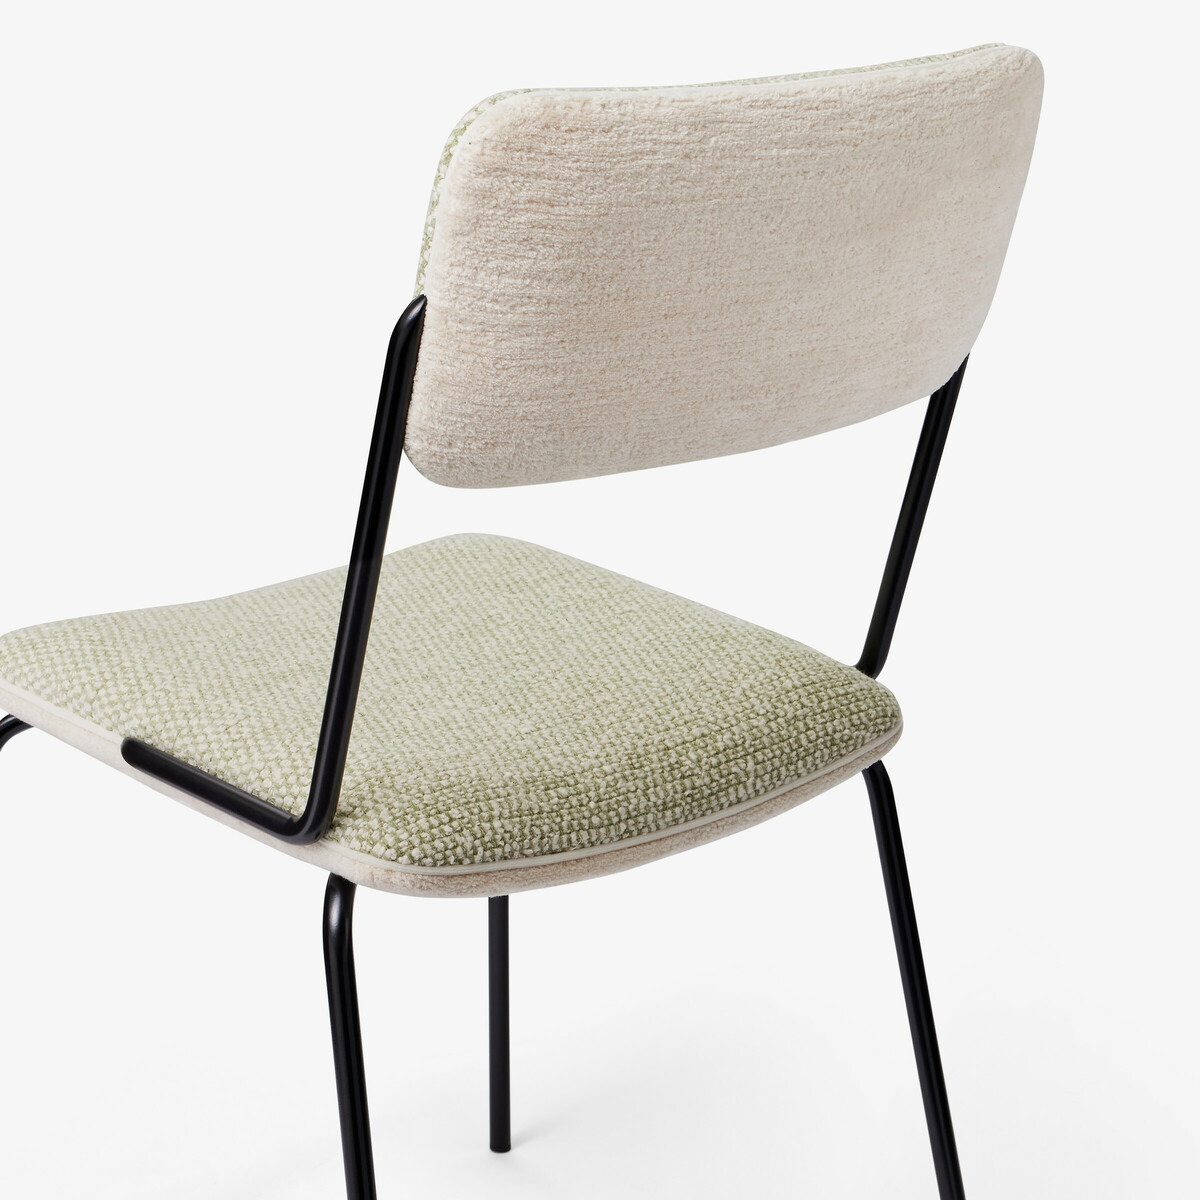 Chair Double Jeu - Publisher Fabric, Almond - H85 x W51 x D43 cm - Steel / Cotton - image 2